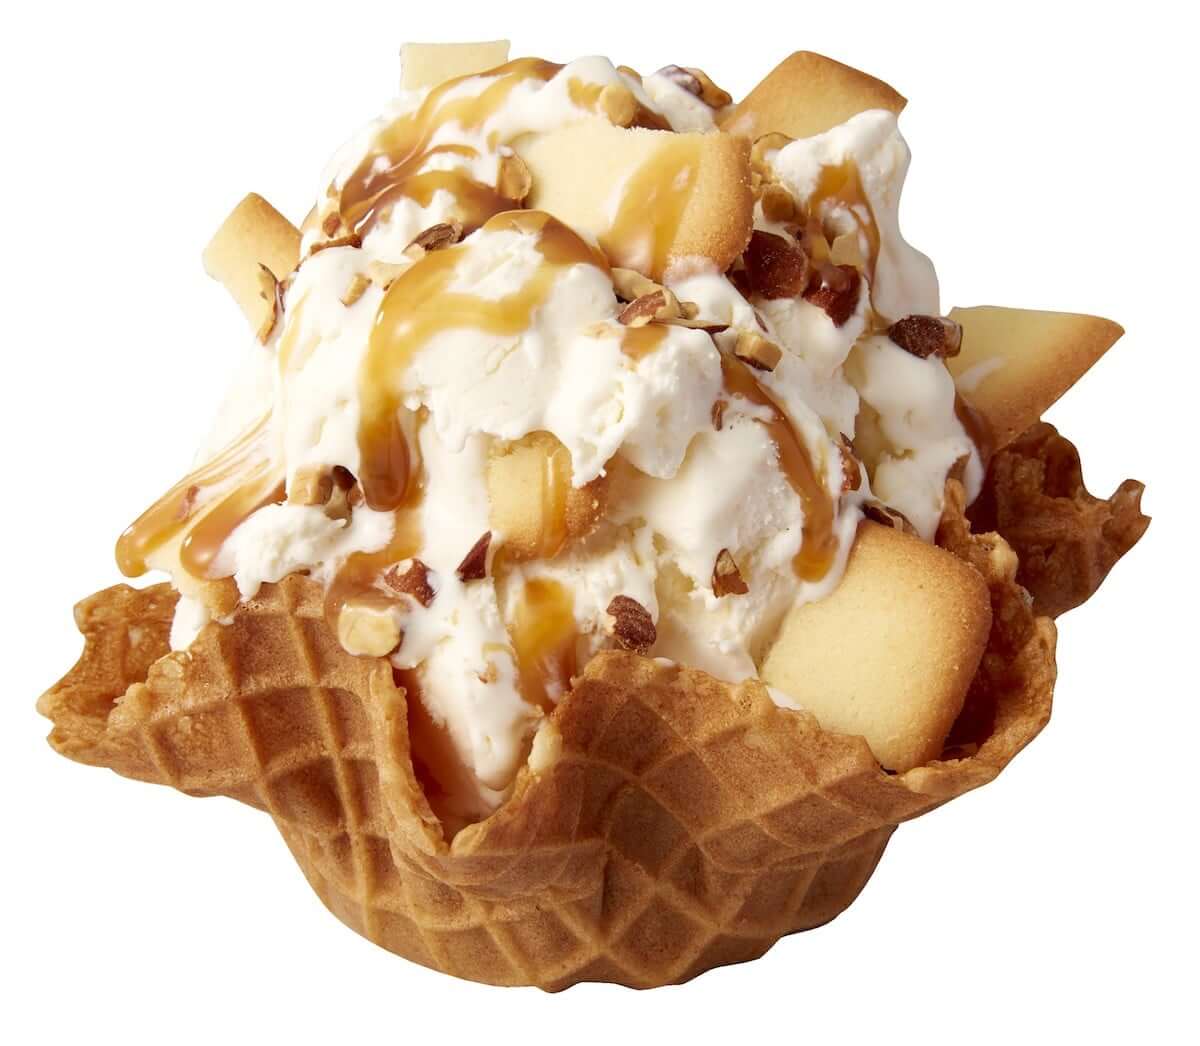 コールドストーン、寒い季節に食べたくなる「濃厚アイスクリーム」3種類を期間限定で発売！！ gourmet181030_coldstone_03-1200x1046